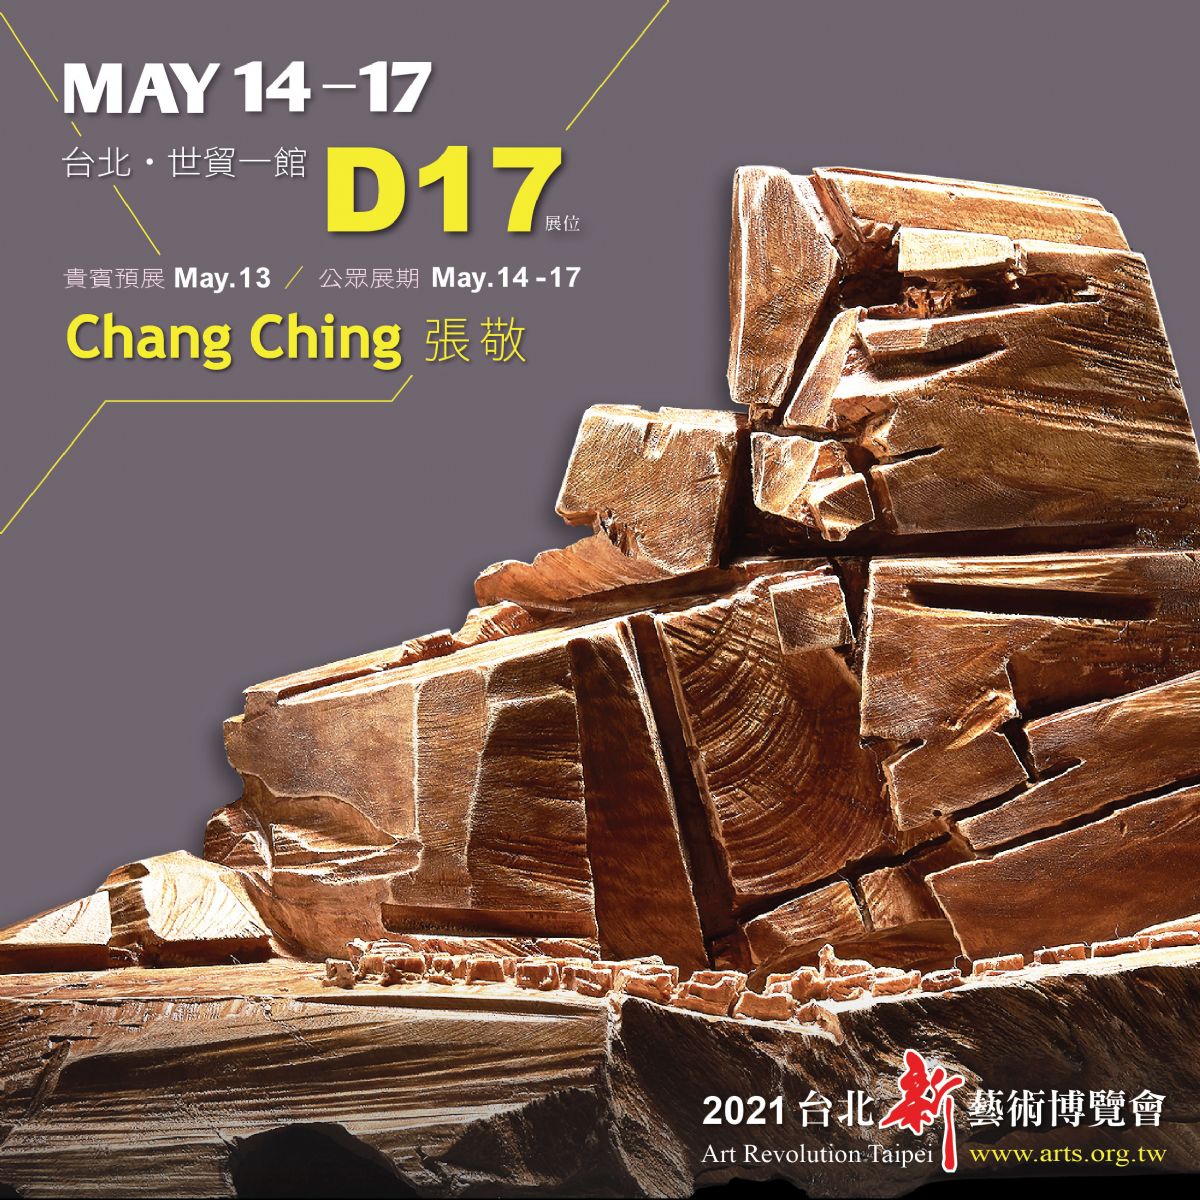 2021 台北新藝術博覽會 #D17展位 (展覽延期)